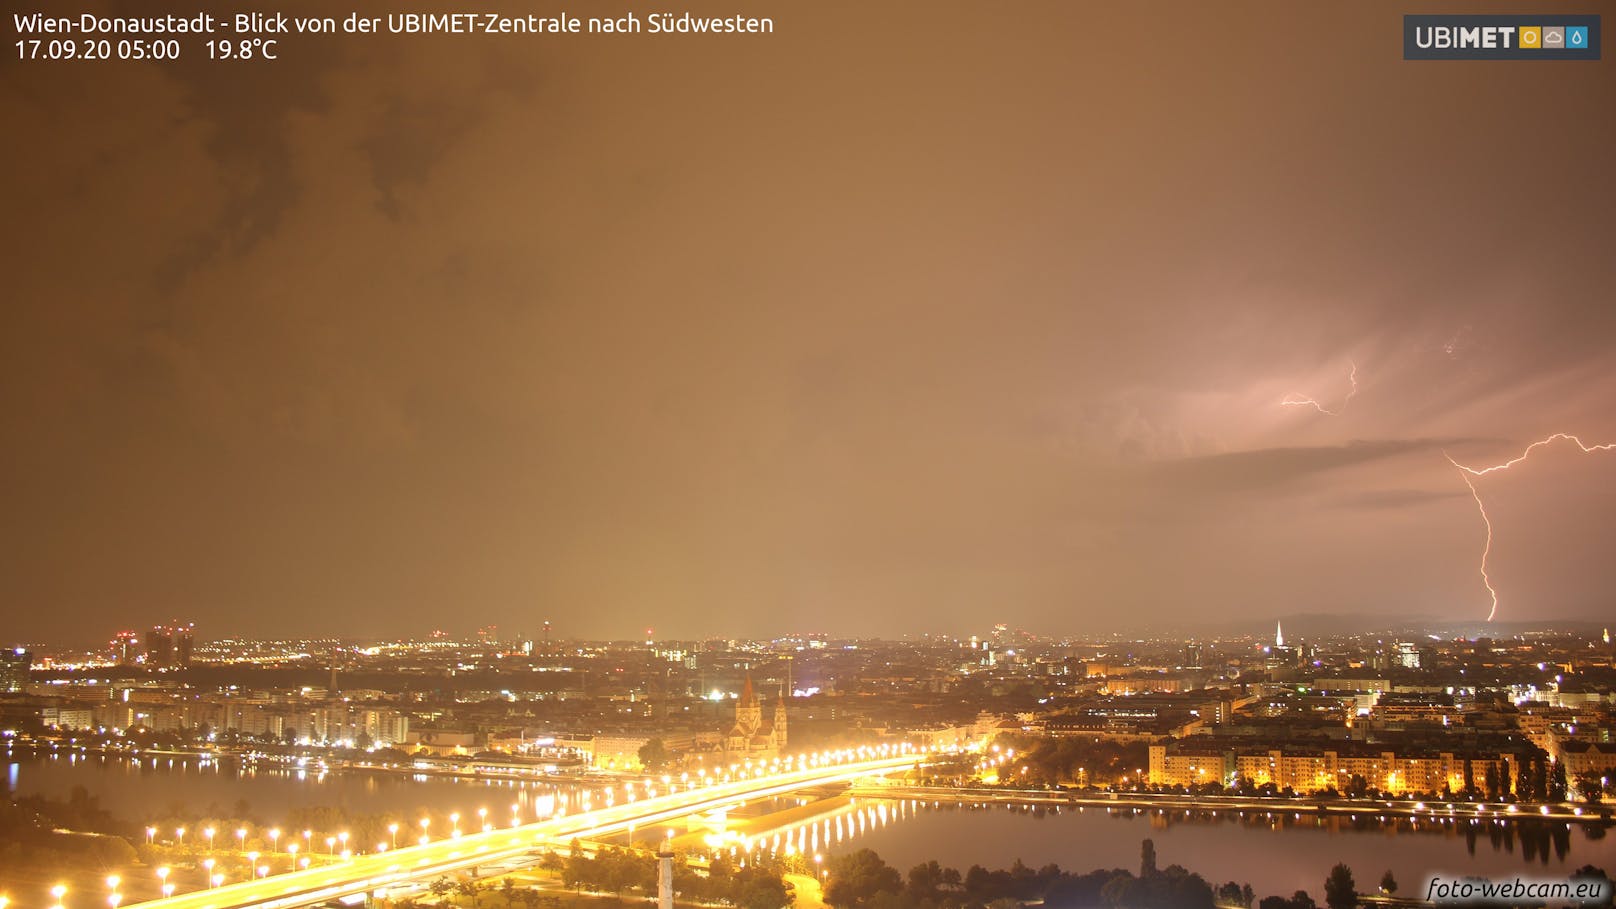 Ein Blitz über Wien in der Nacht auf 17. September 2020